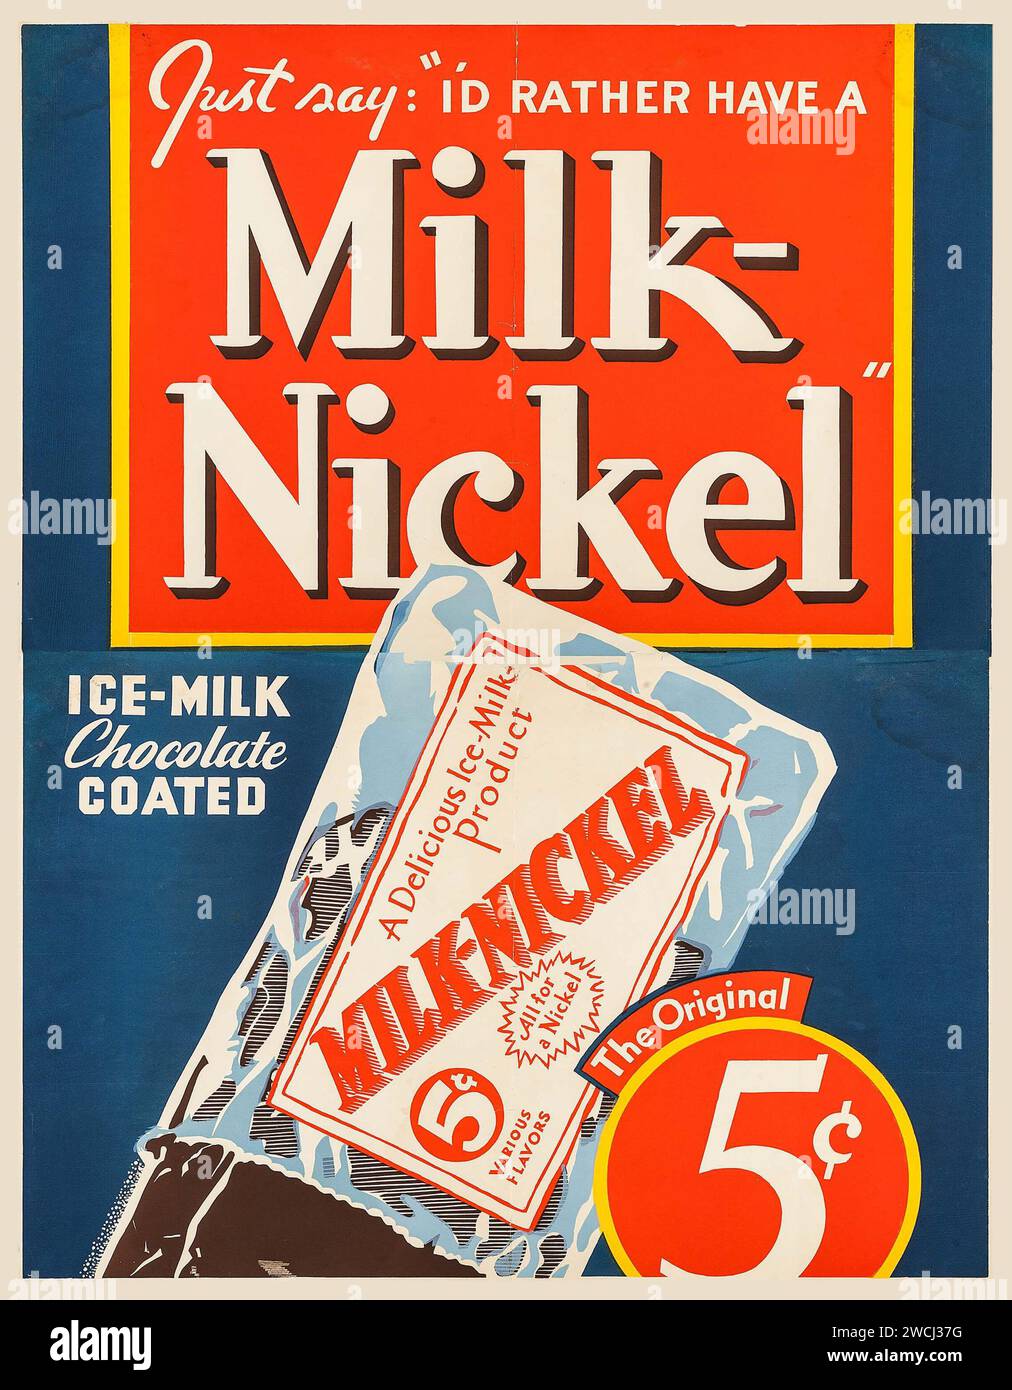 Affiche publicitaire vintage - Milk-Nickel (années 1930), une friandise enrobée de chocolat au lait glacé, seulement 5 cents Banque D'Images